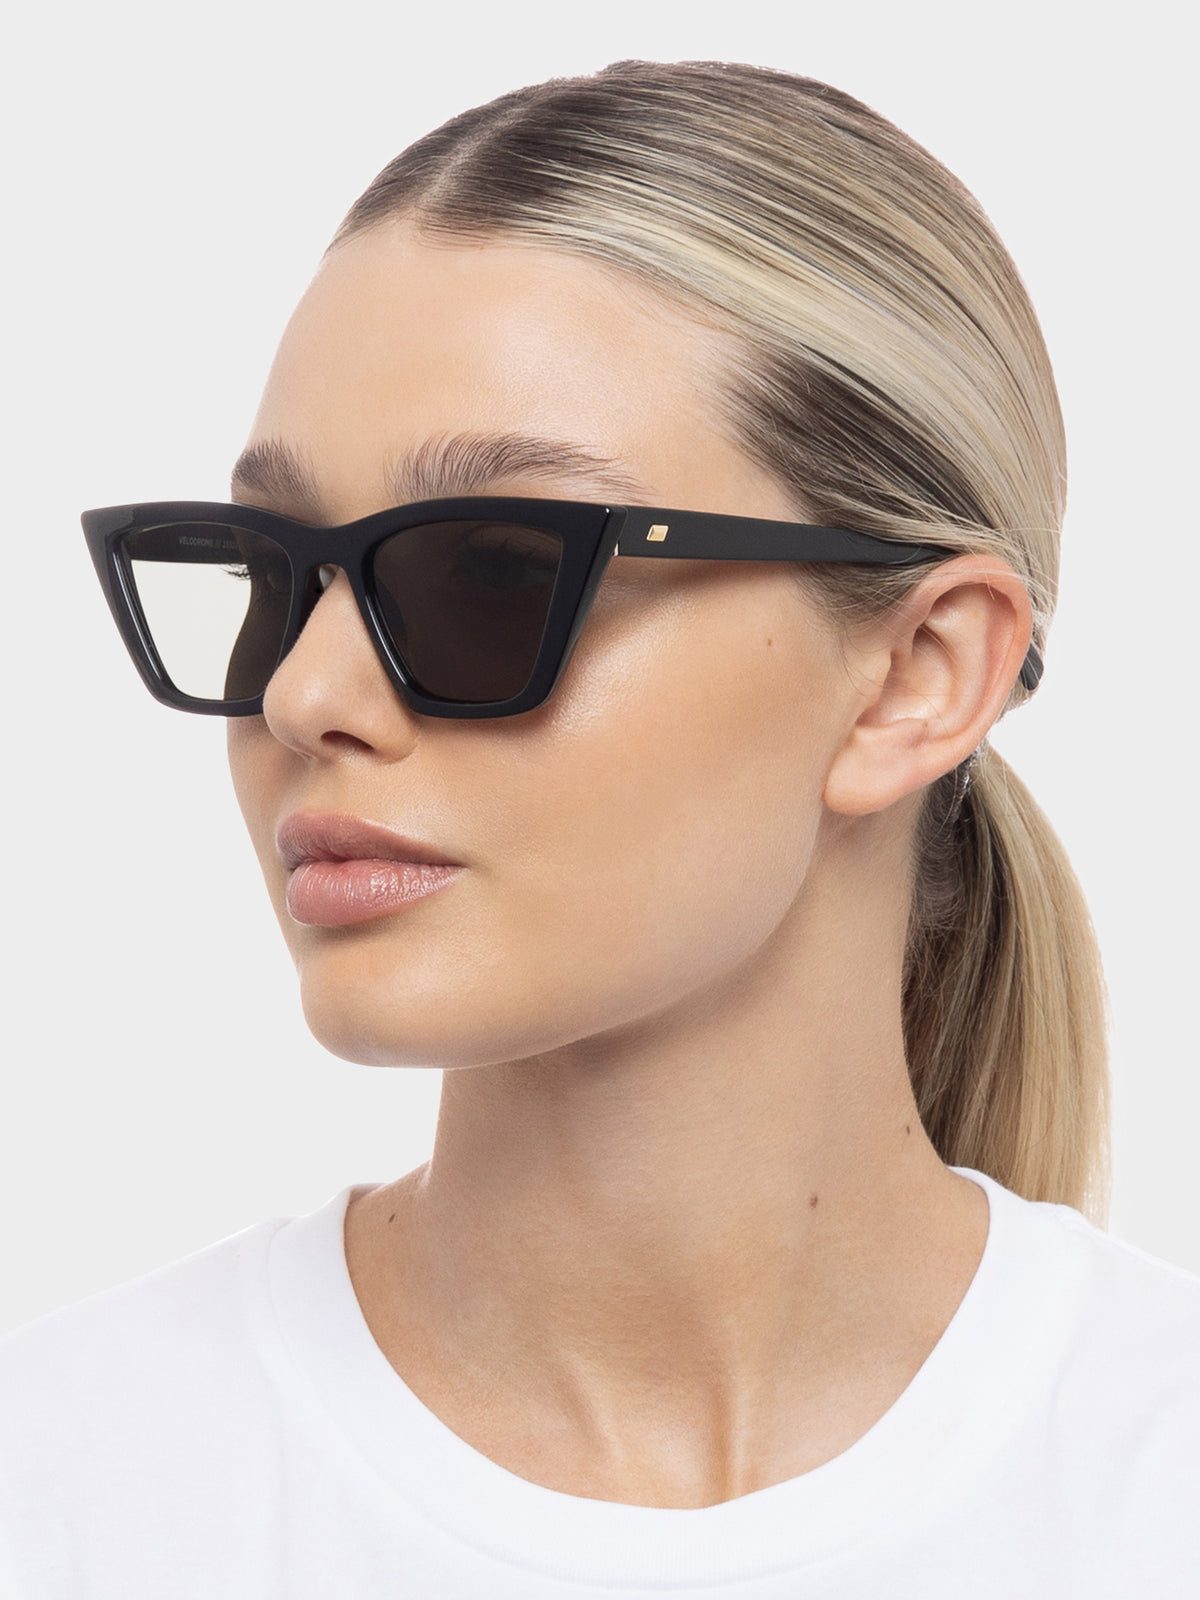 Velodrome Sunglasses in Black Khaki Mono